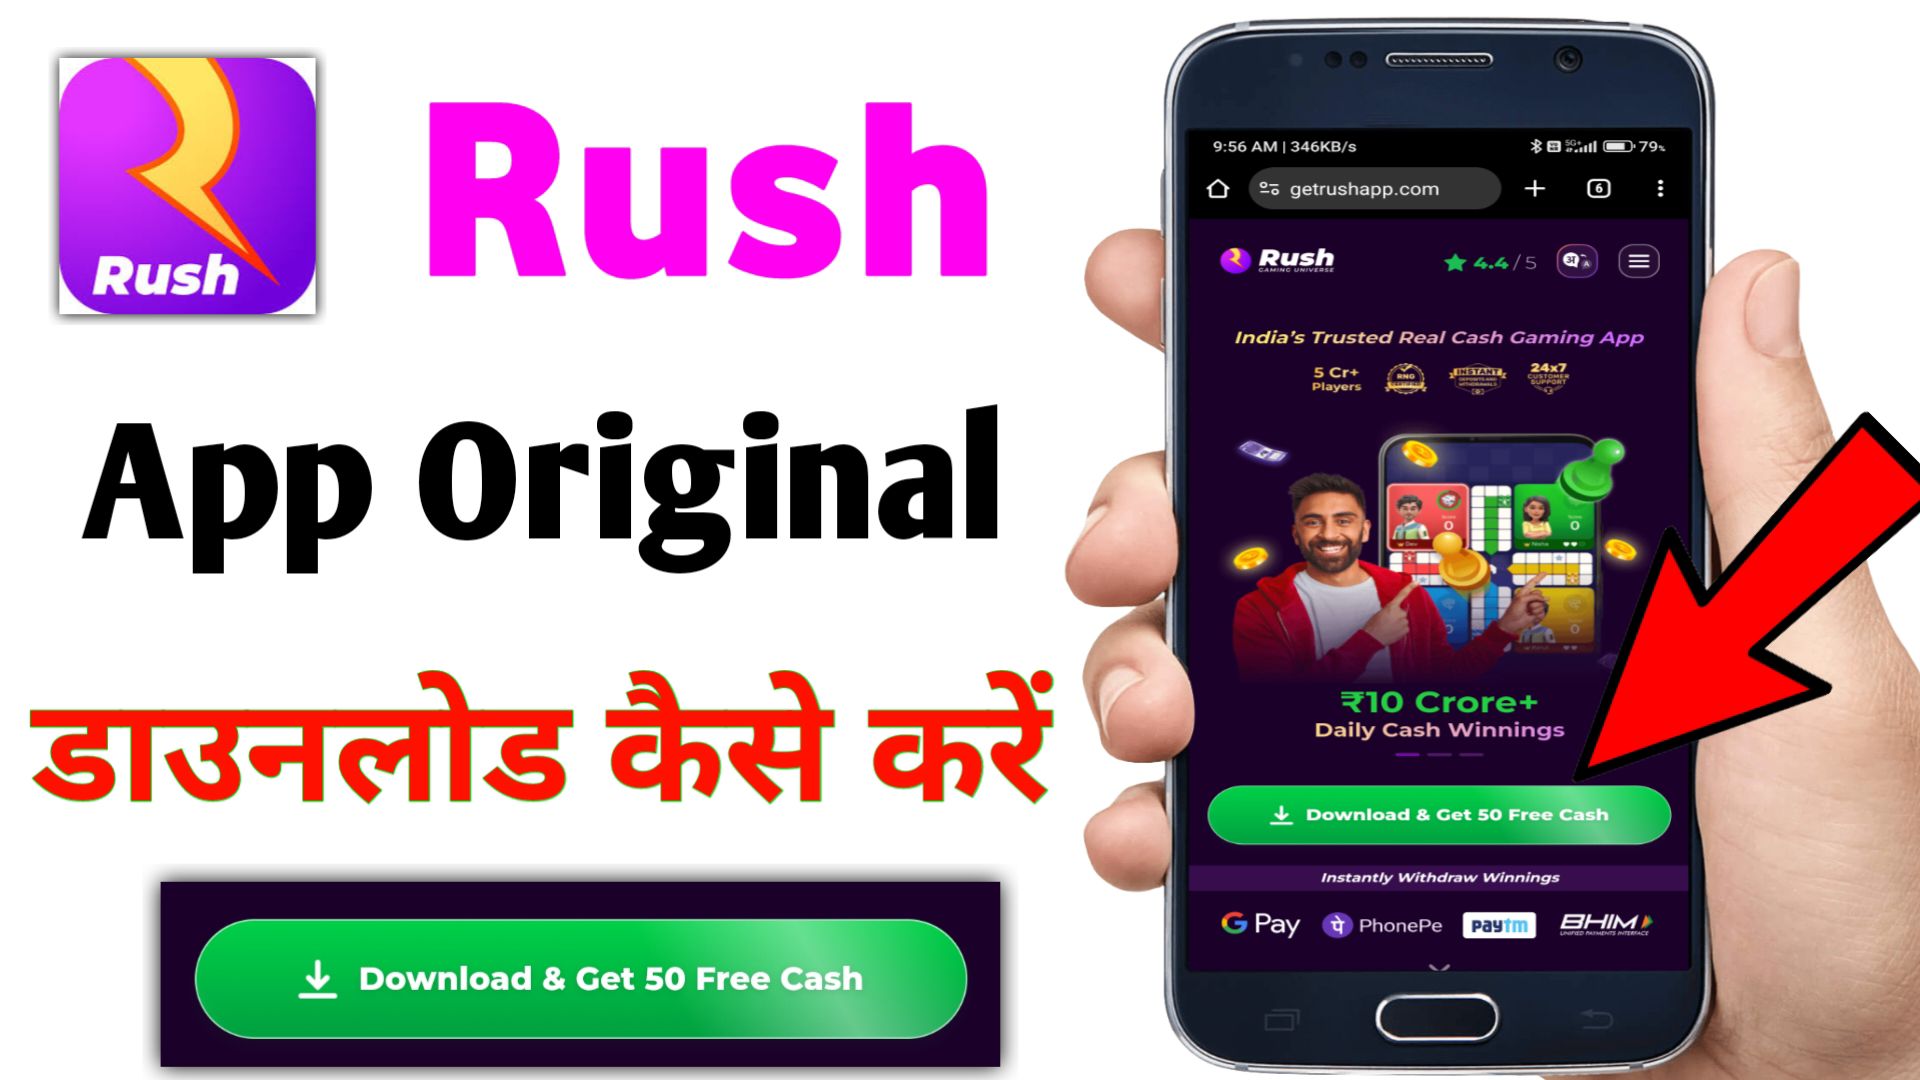 Rush App Original Download Kaise Kare?